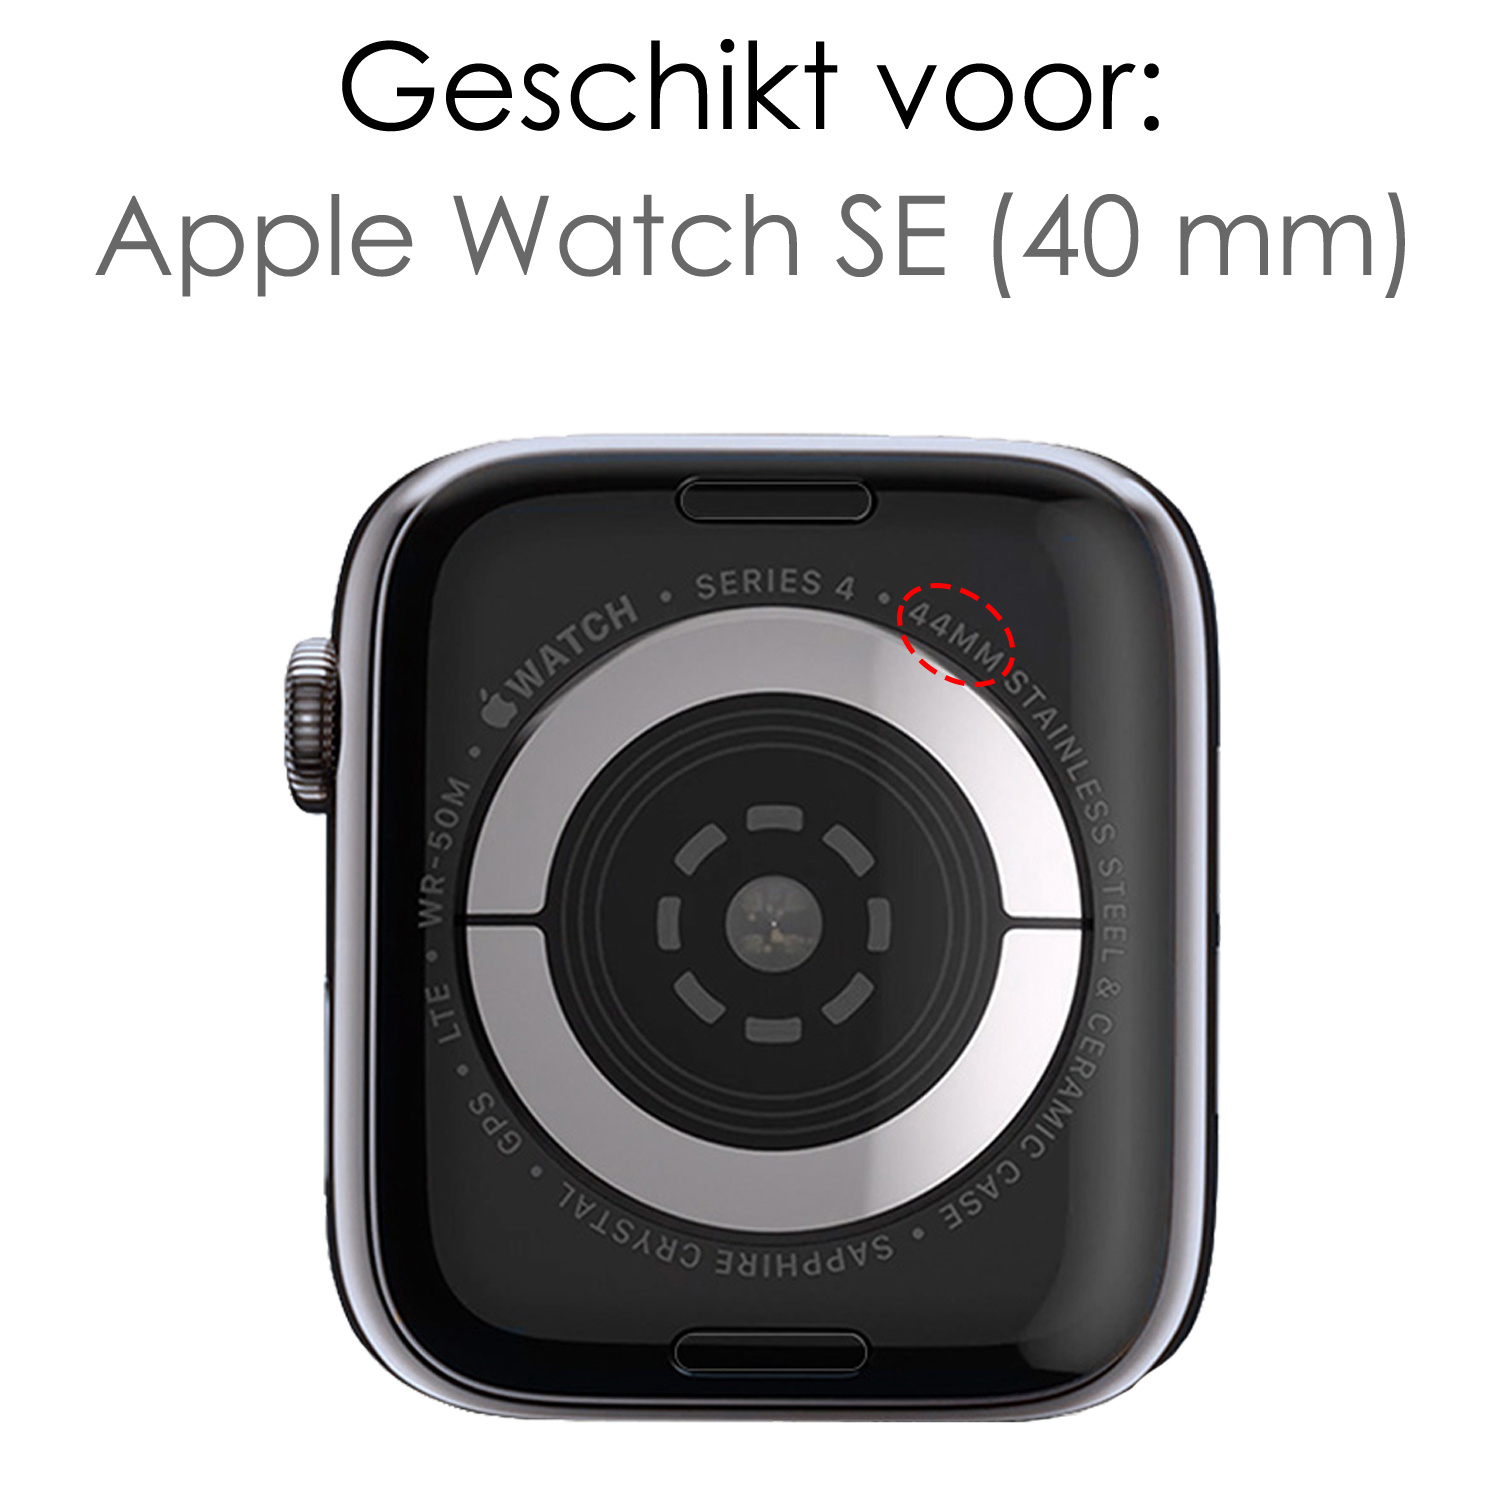 NoXx Horlogeband Milanees Geschikt voor Apple Watch SE 40 mm Bandje - Bandje Geschikt voor Apple Watch SE 40 mm Band Milanees - Zwart & Rose Goud